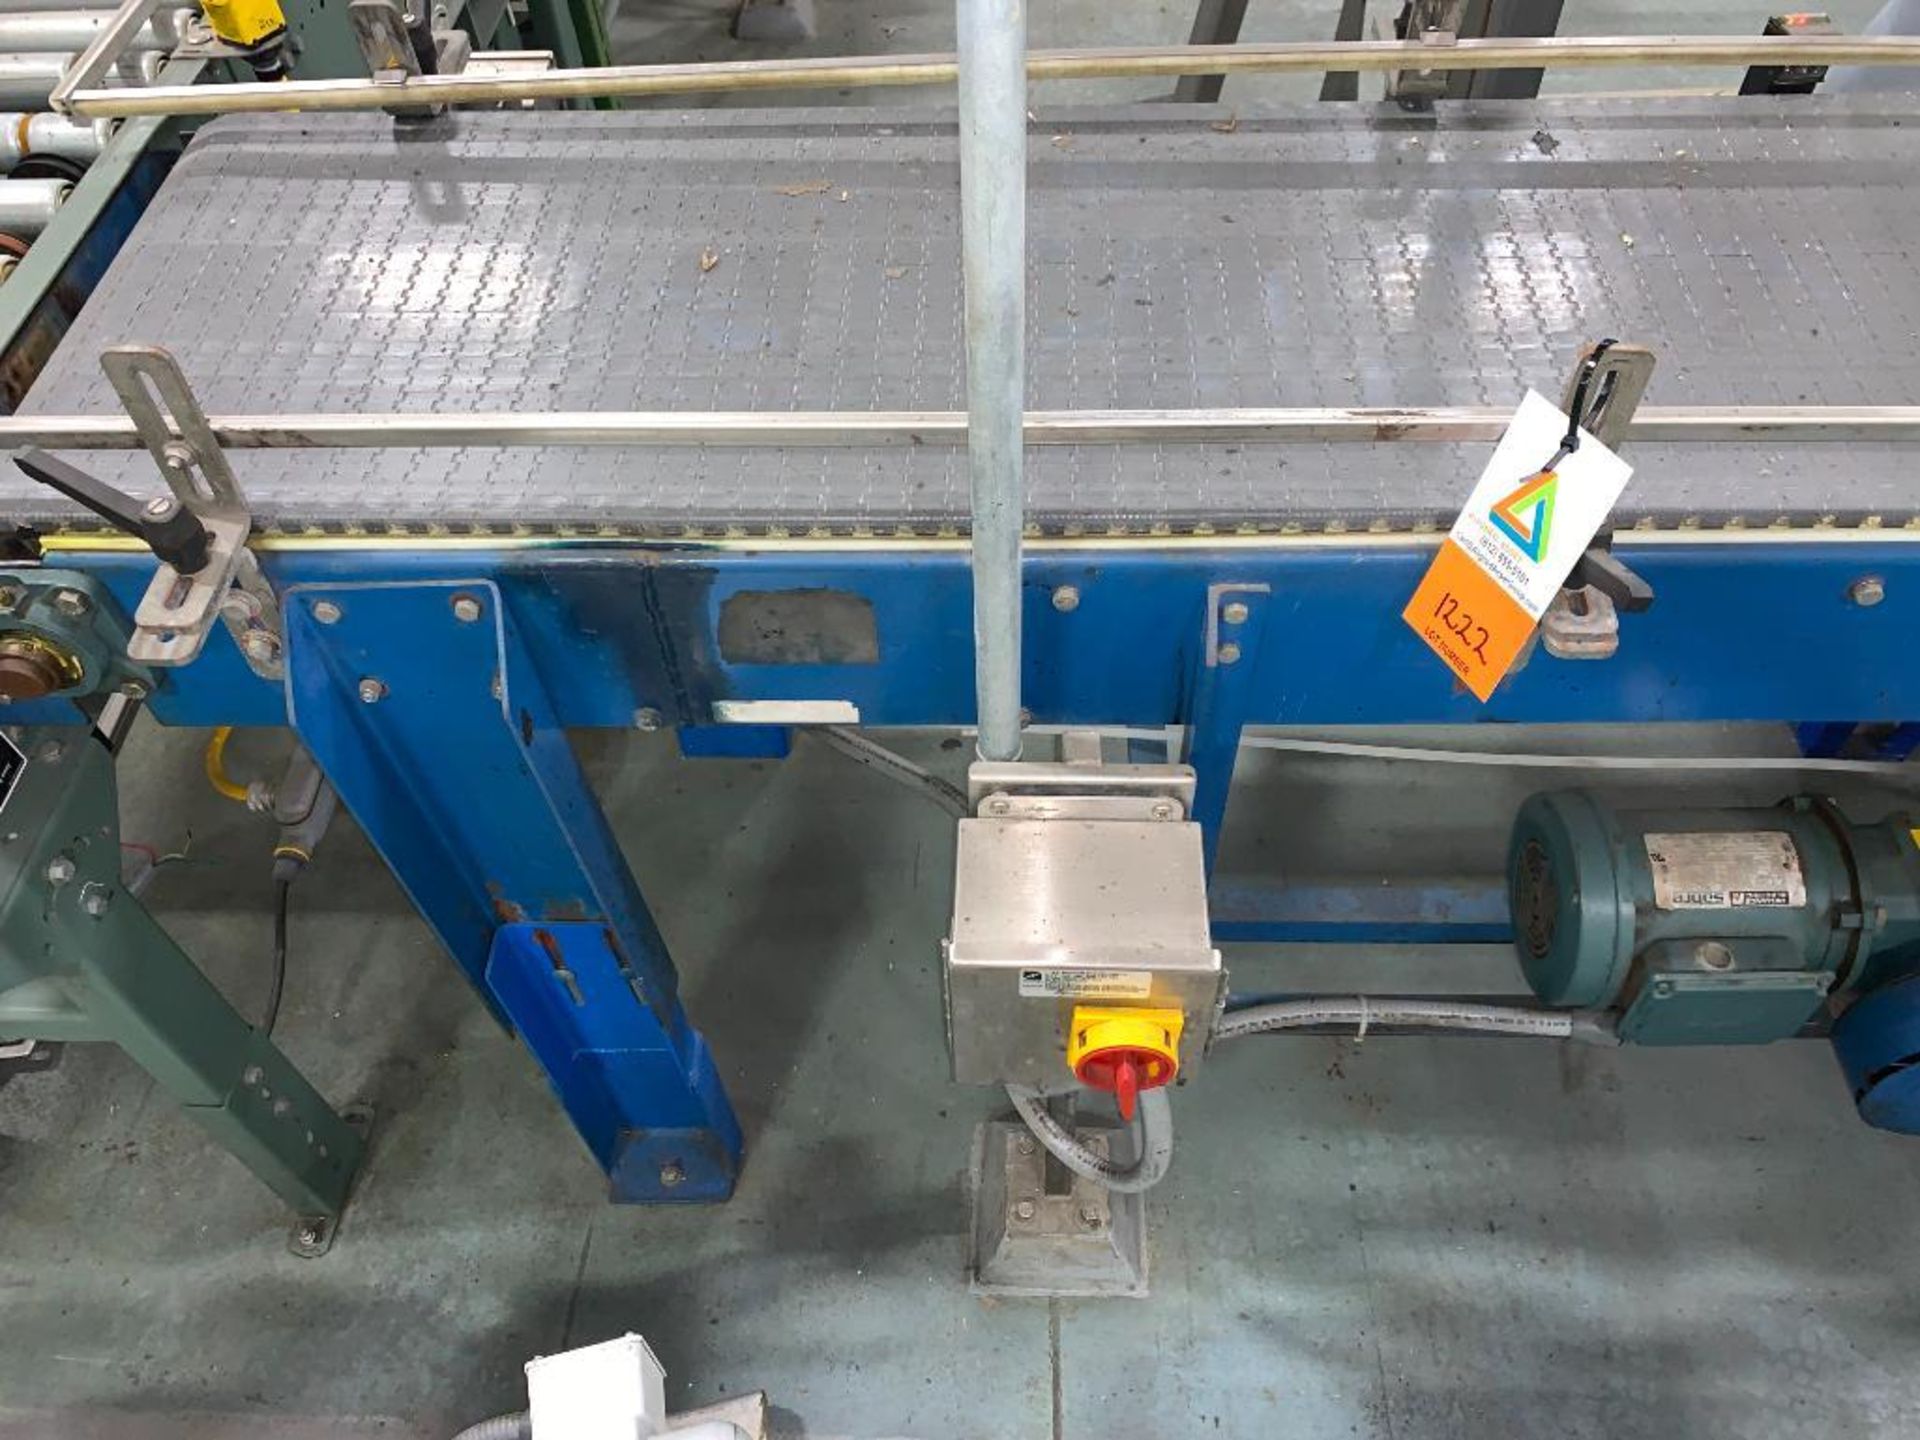 mild steel conveyor, 76 in. x 18 in. x 35 in., gray plastic belt - Image 4 of 9